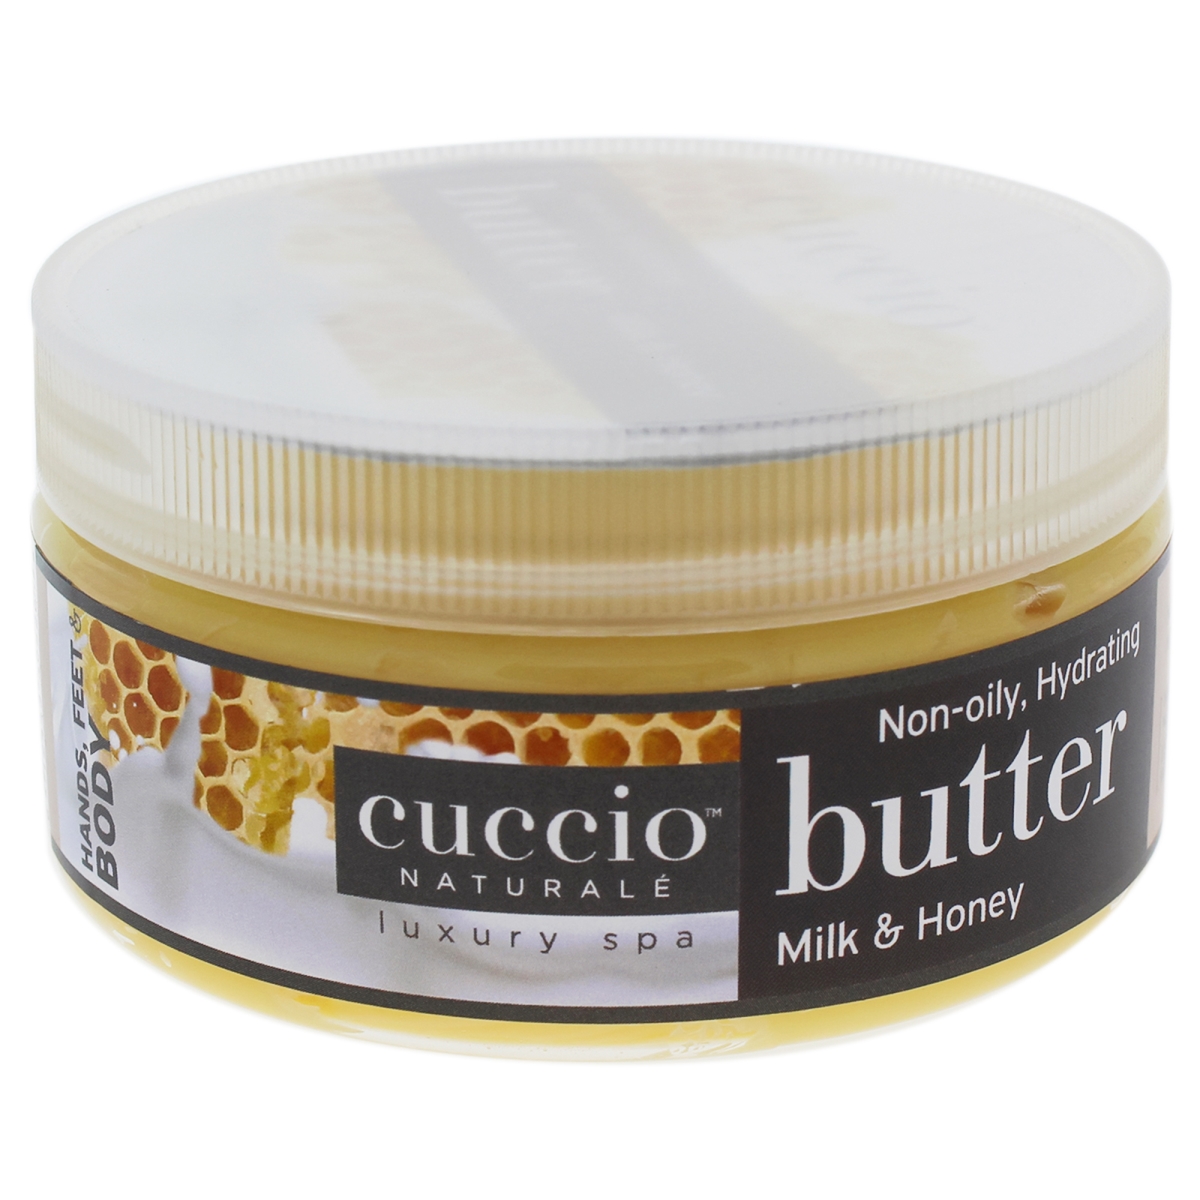 I0090880 Butter Blend Body Lotion For Unisex - Milk & Honey - 8 Oz